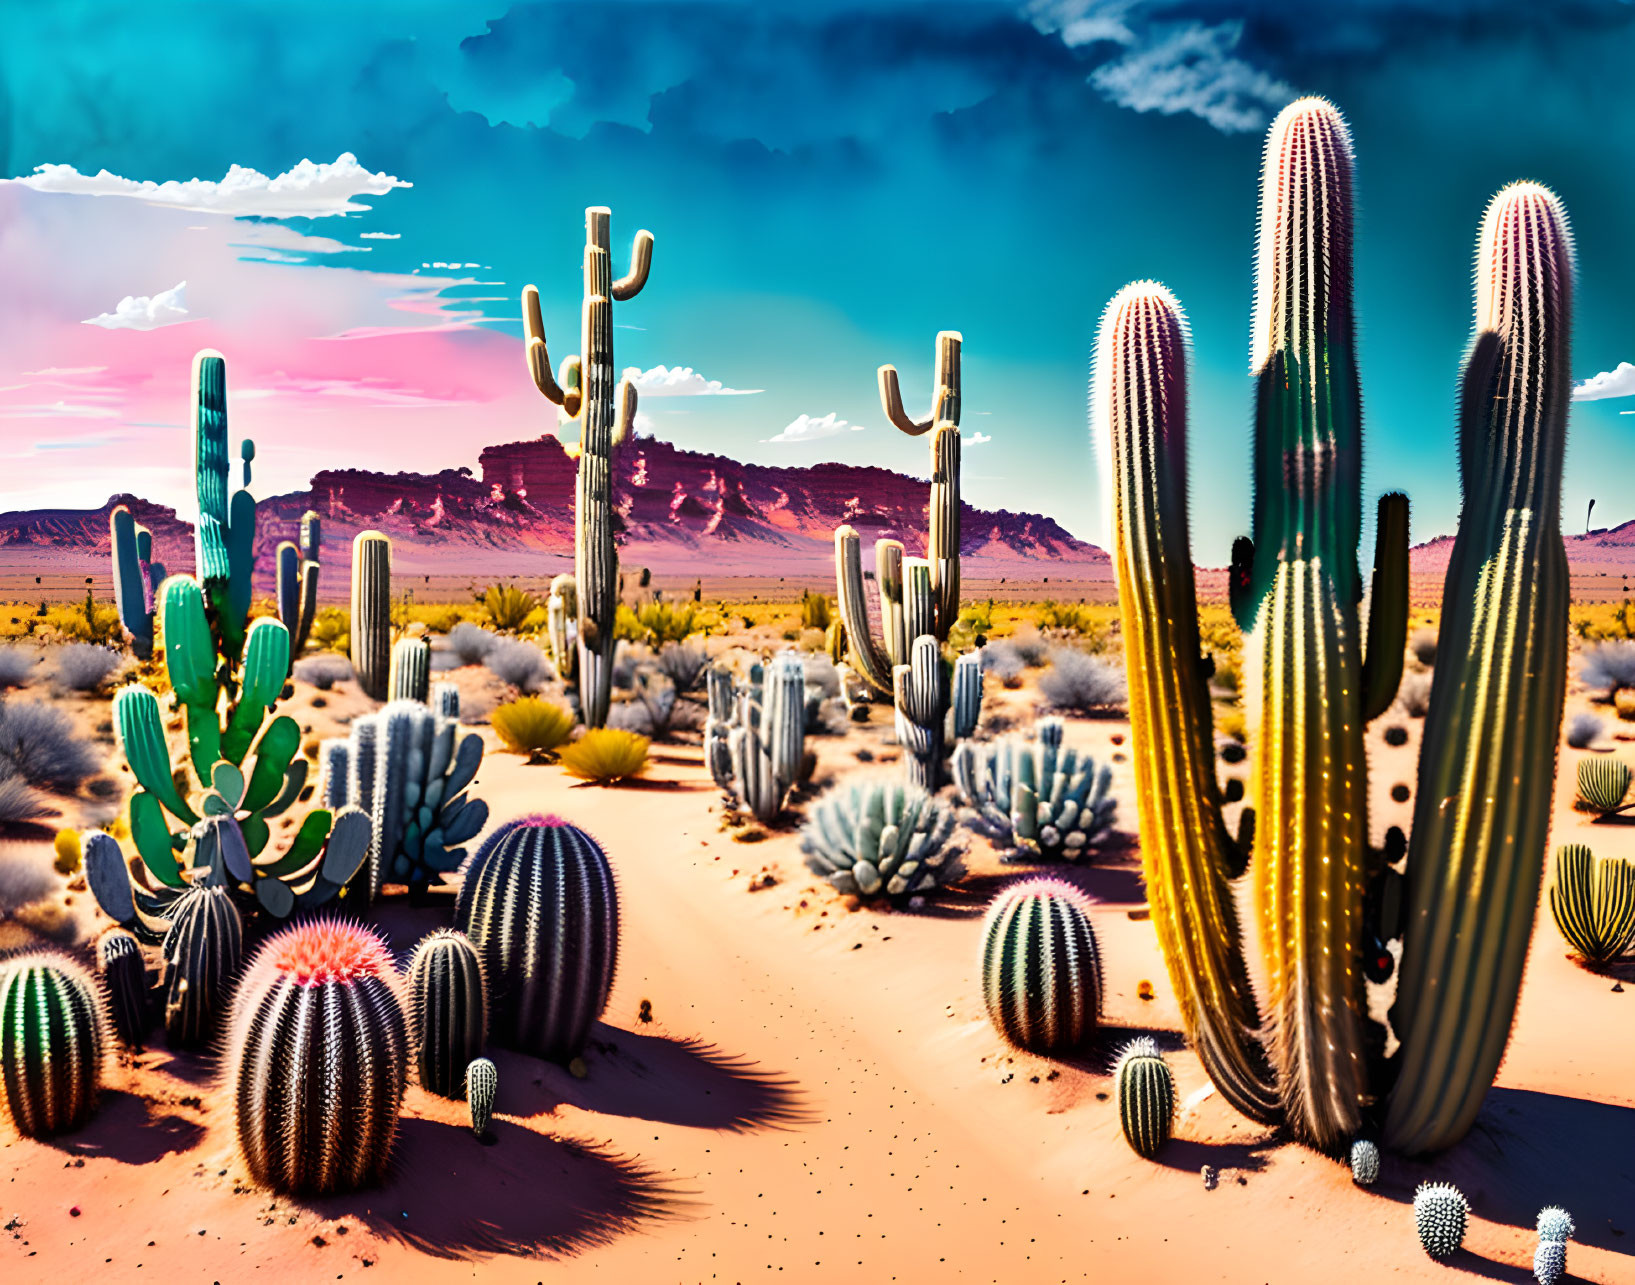 Diverse cacti in vibrant desert landscape under blue sky